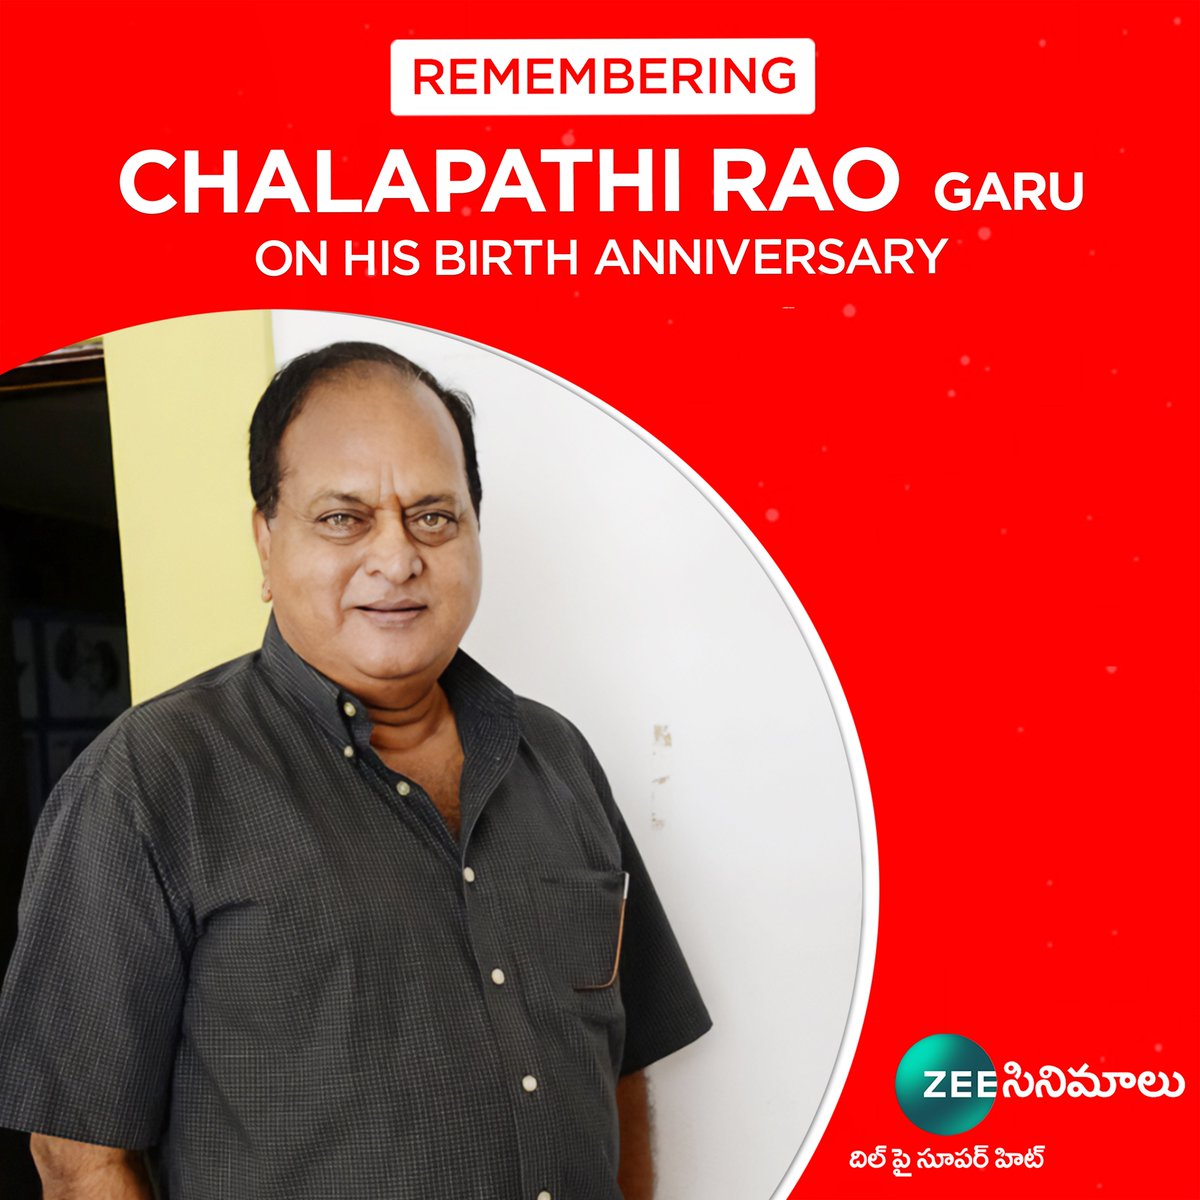 Remembering legendary actor #ChalapathiRao garu on his birth anniversary 💐💐 #RememberingChalapathiRao #ZeeCinemalu